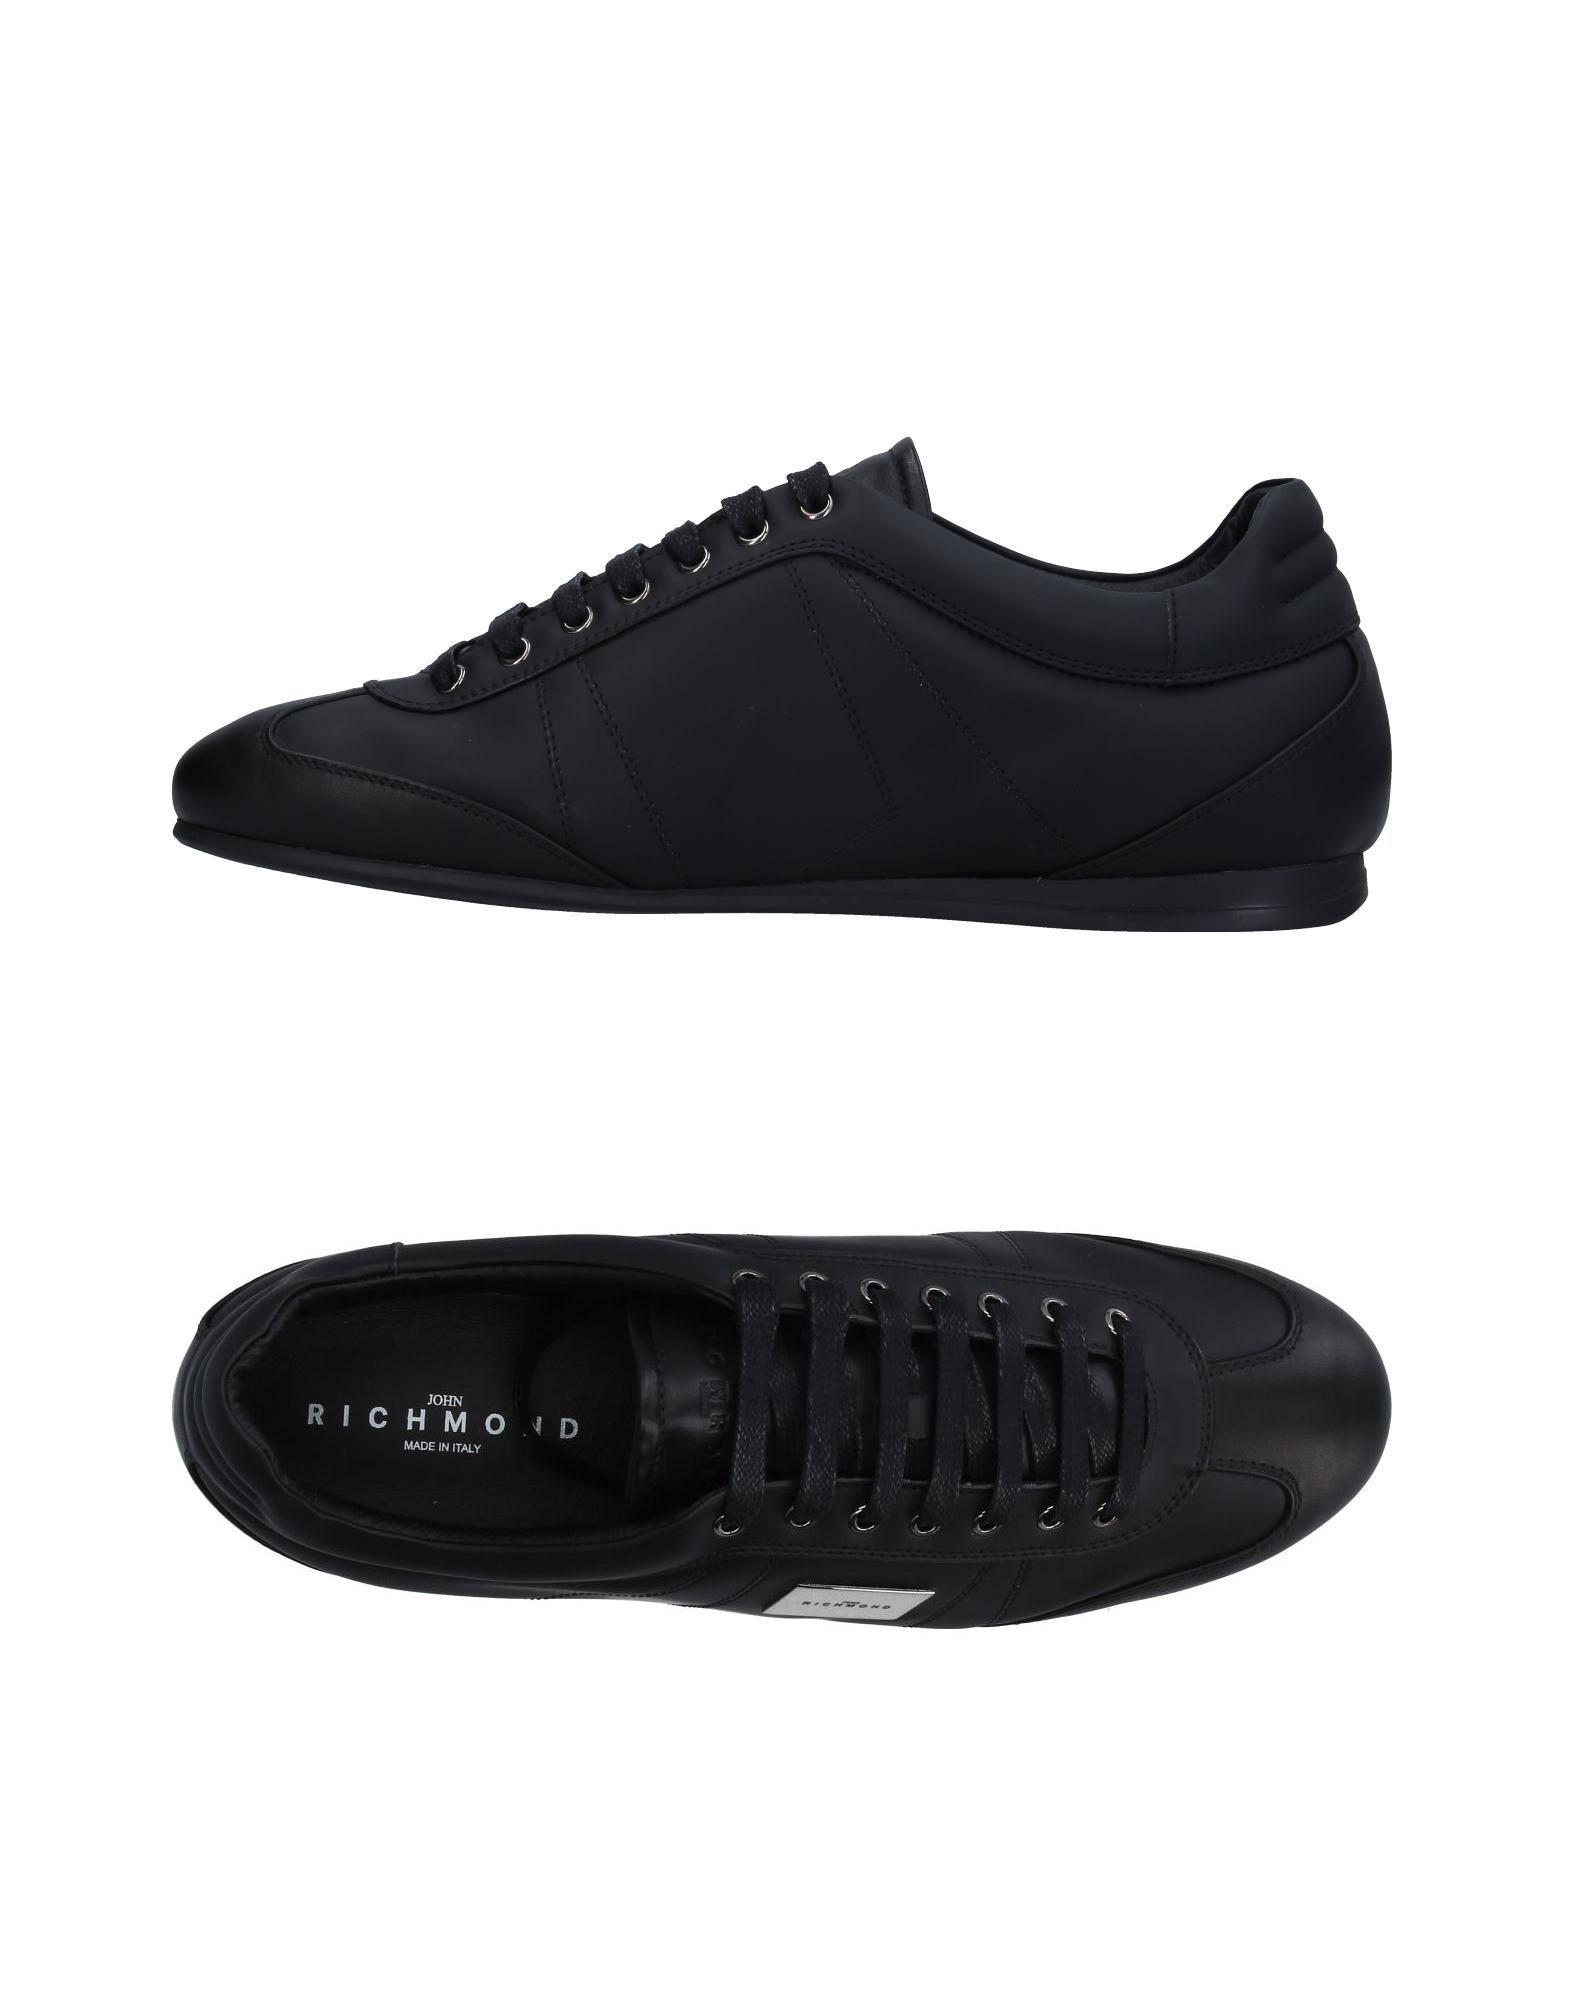 Lyst - John richmond Low-tops & Sneakers in Black for Men